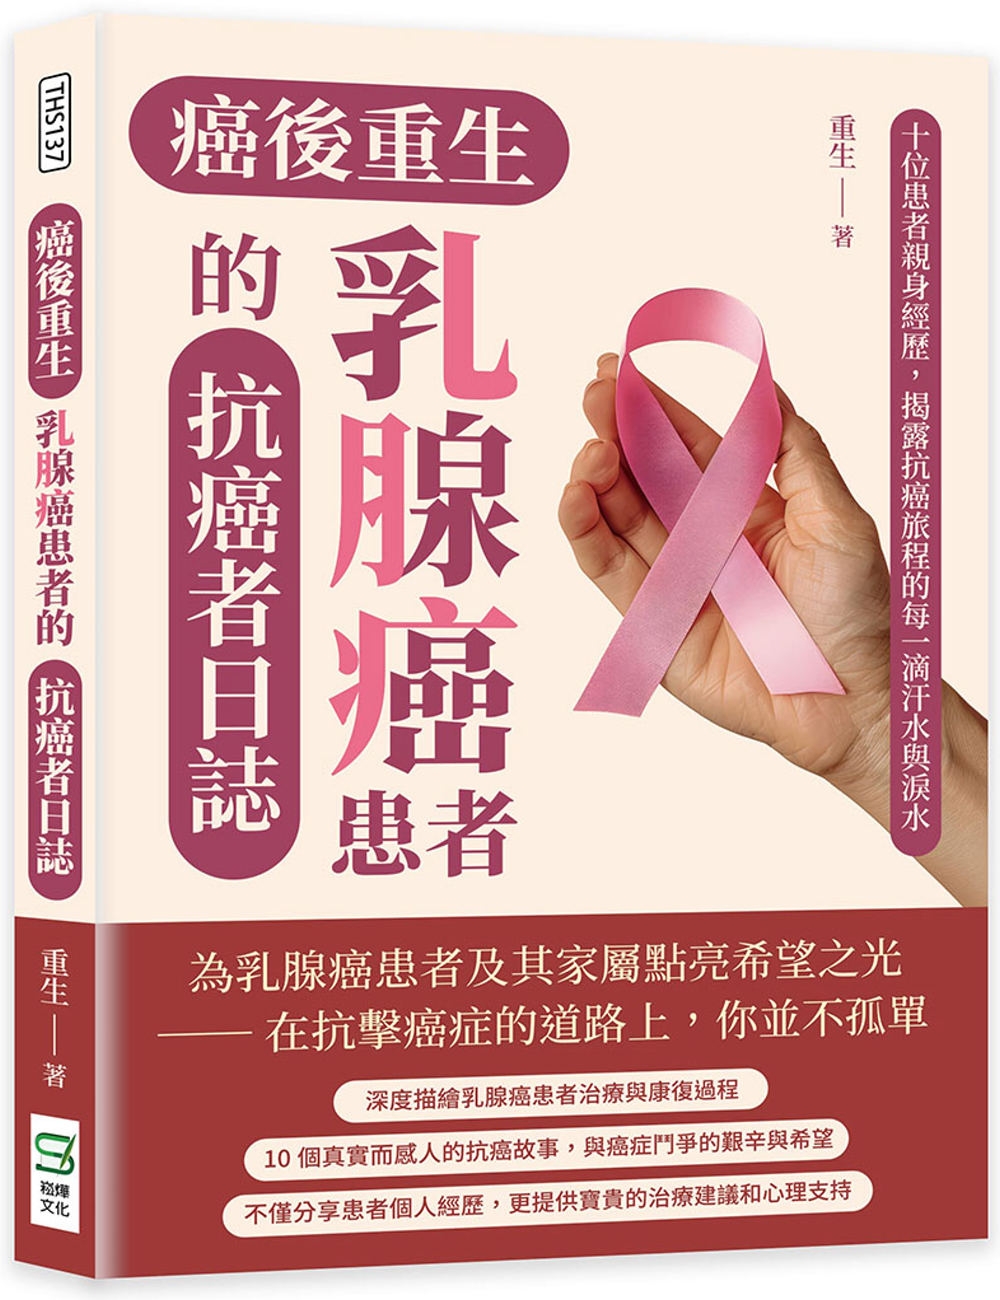 癌後重生──乳腺癌患者的抗癌者日誌：十位患者親身經歷，揭露抗癌旅程的每一滴汗水與淚水